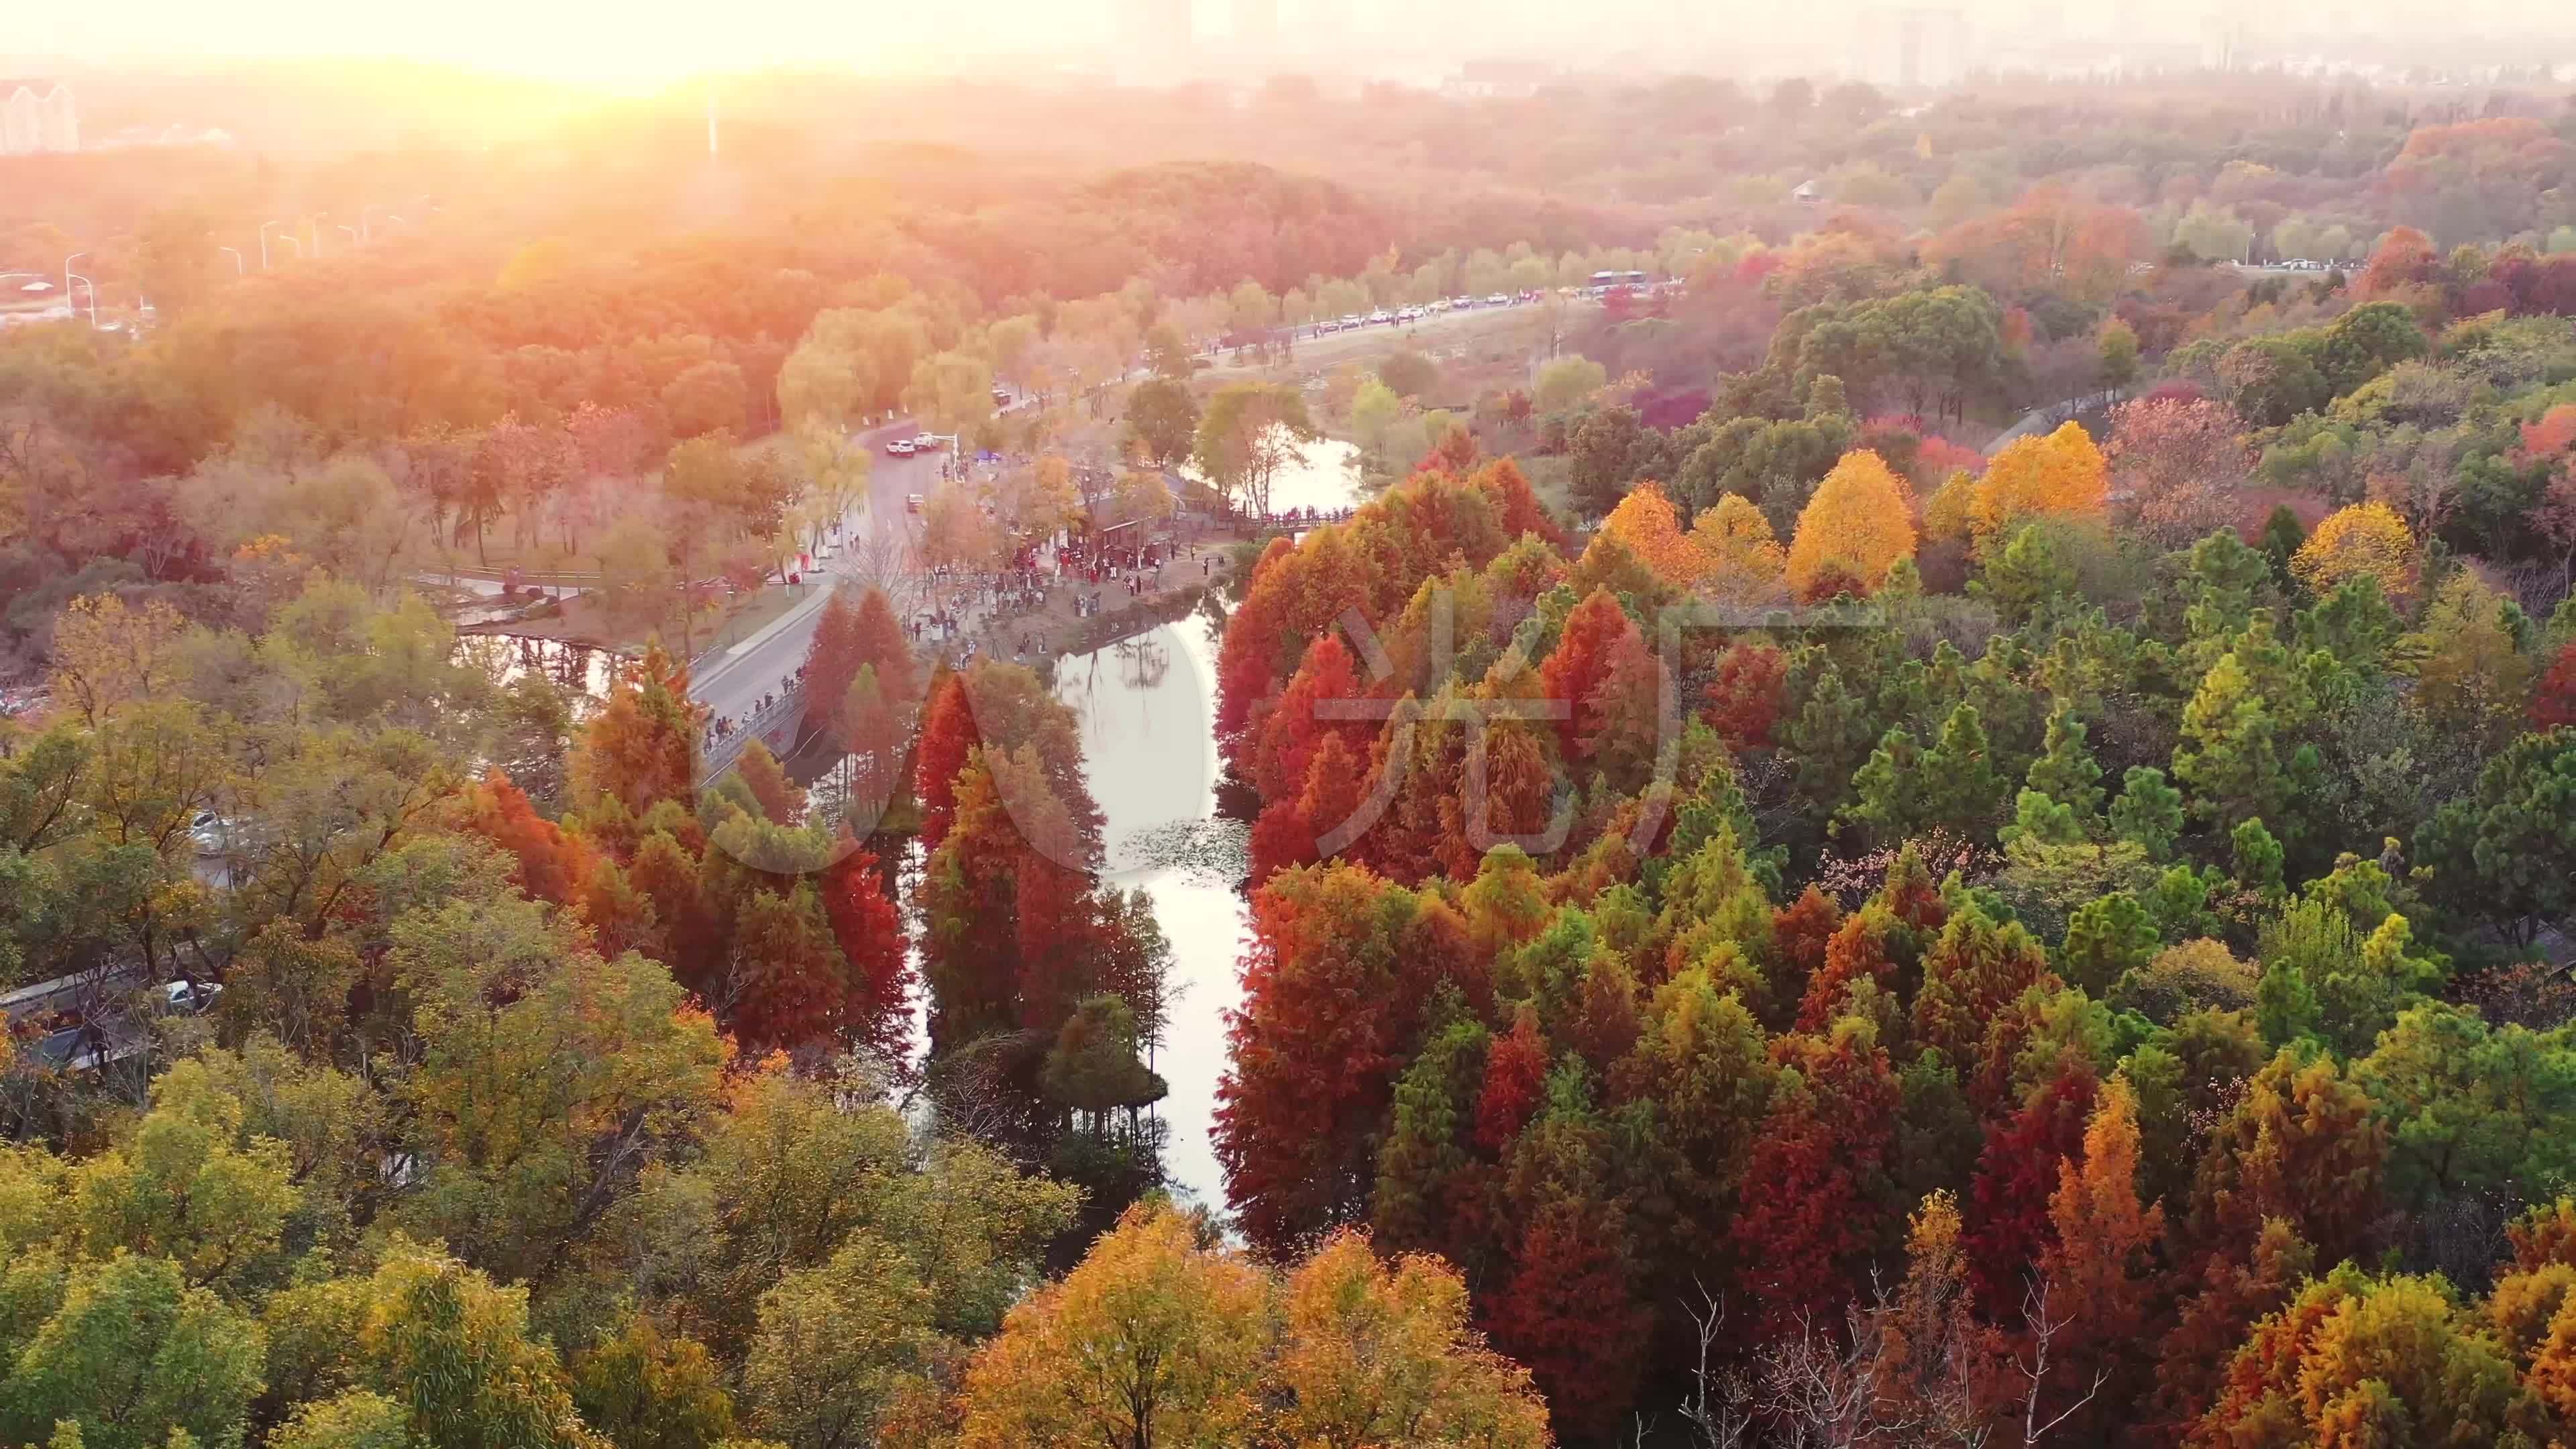 【携程攻略】南京明孝陵景点,作为南京人，秋季的明孝陵也是魅力十足。秋天一定要来明孝陵感受秋季…